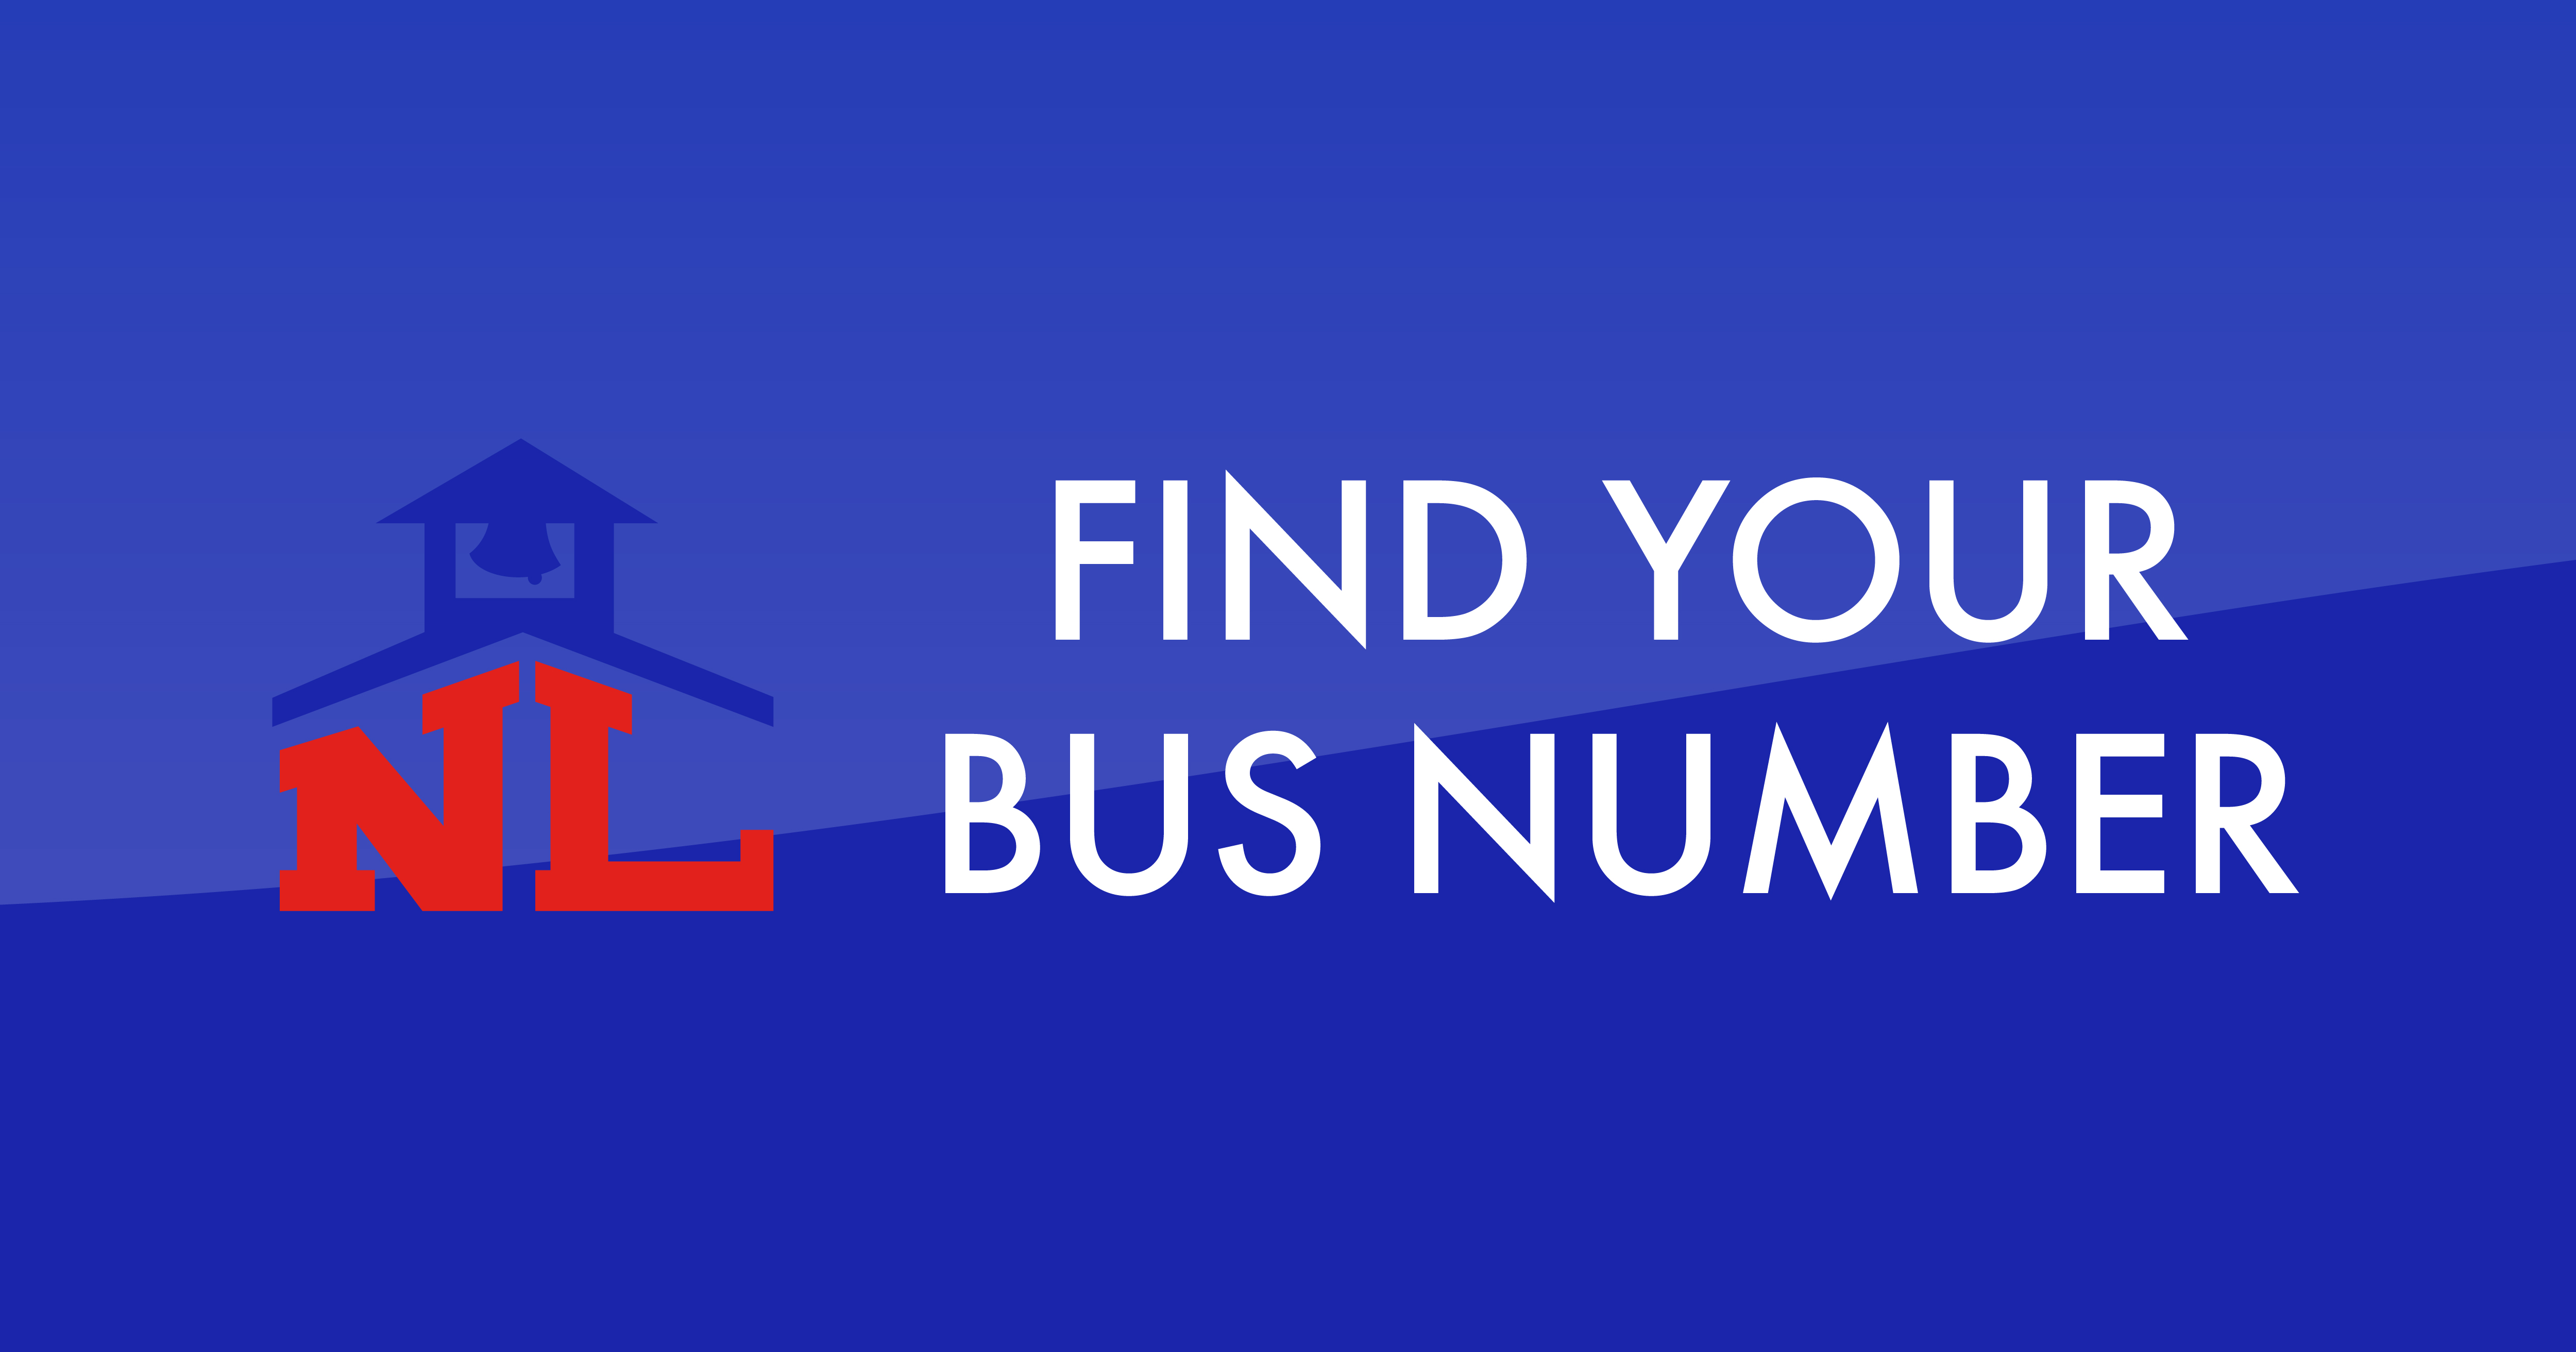 eLink - Find Your Bus Number